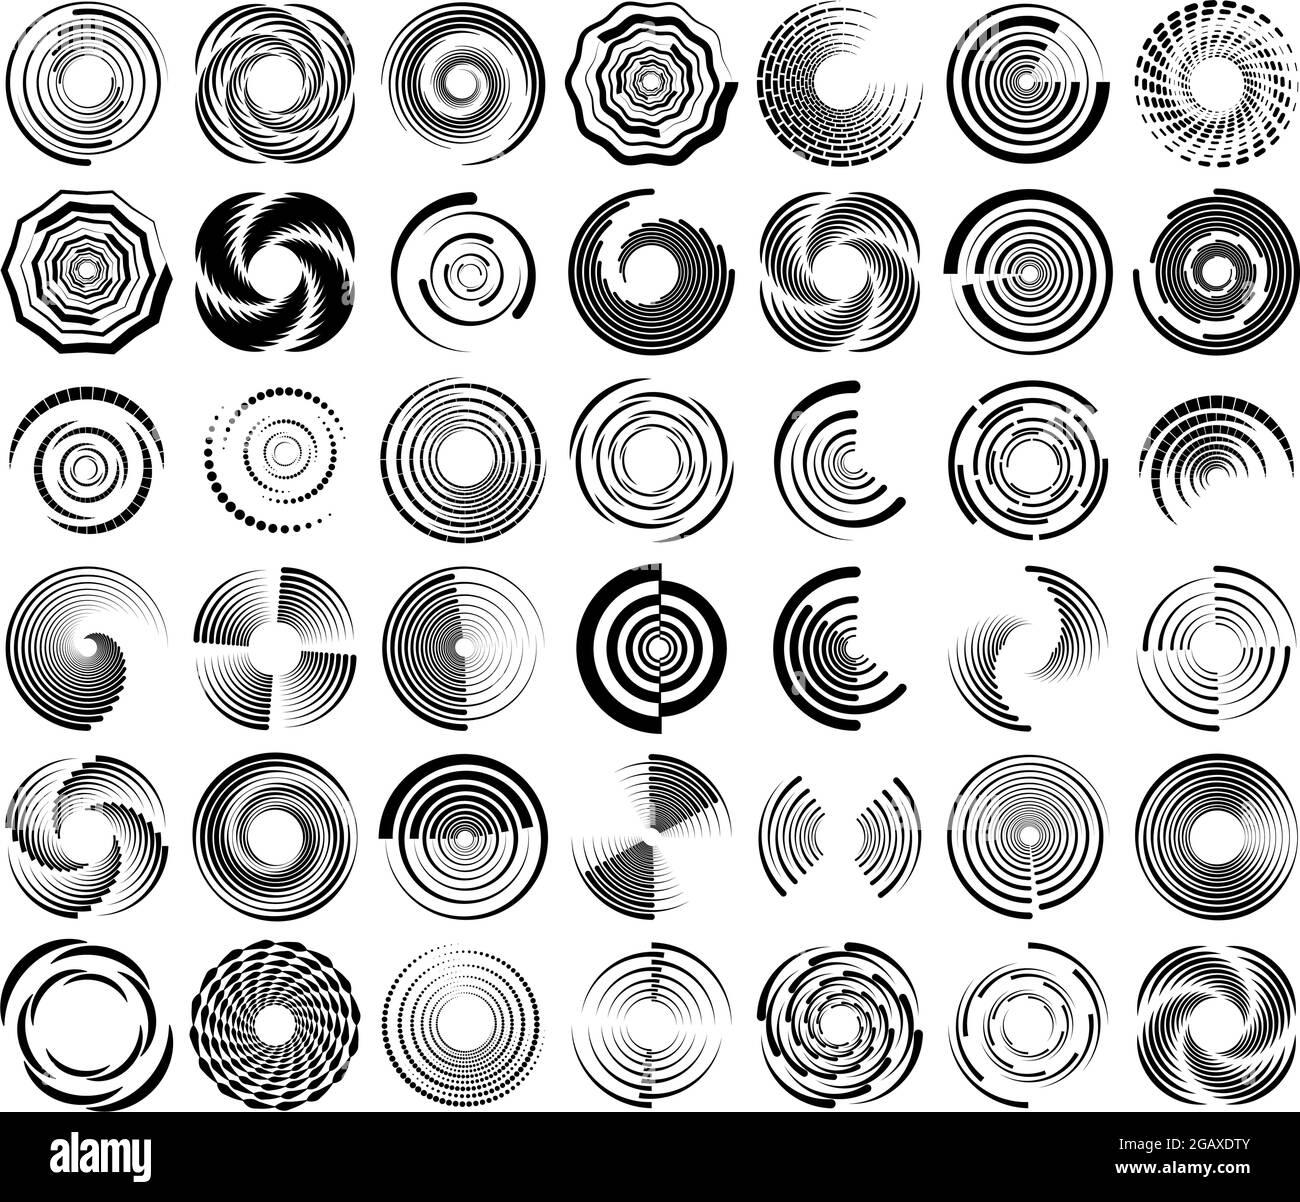 Spirale, Wirbel, Wirbel, Wirbelsymbol, Form. Konzentrische Kreise, Ringe. Abstrakte geometrische Formen mit Rotationseffekt – Stock-Vektor-Illustration, Clip Stock Vektor